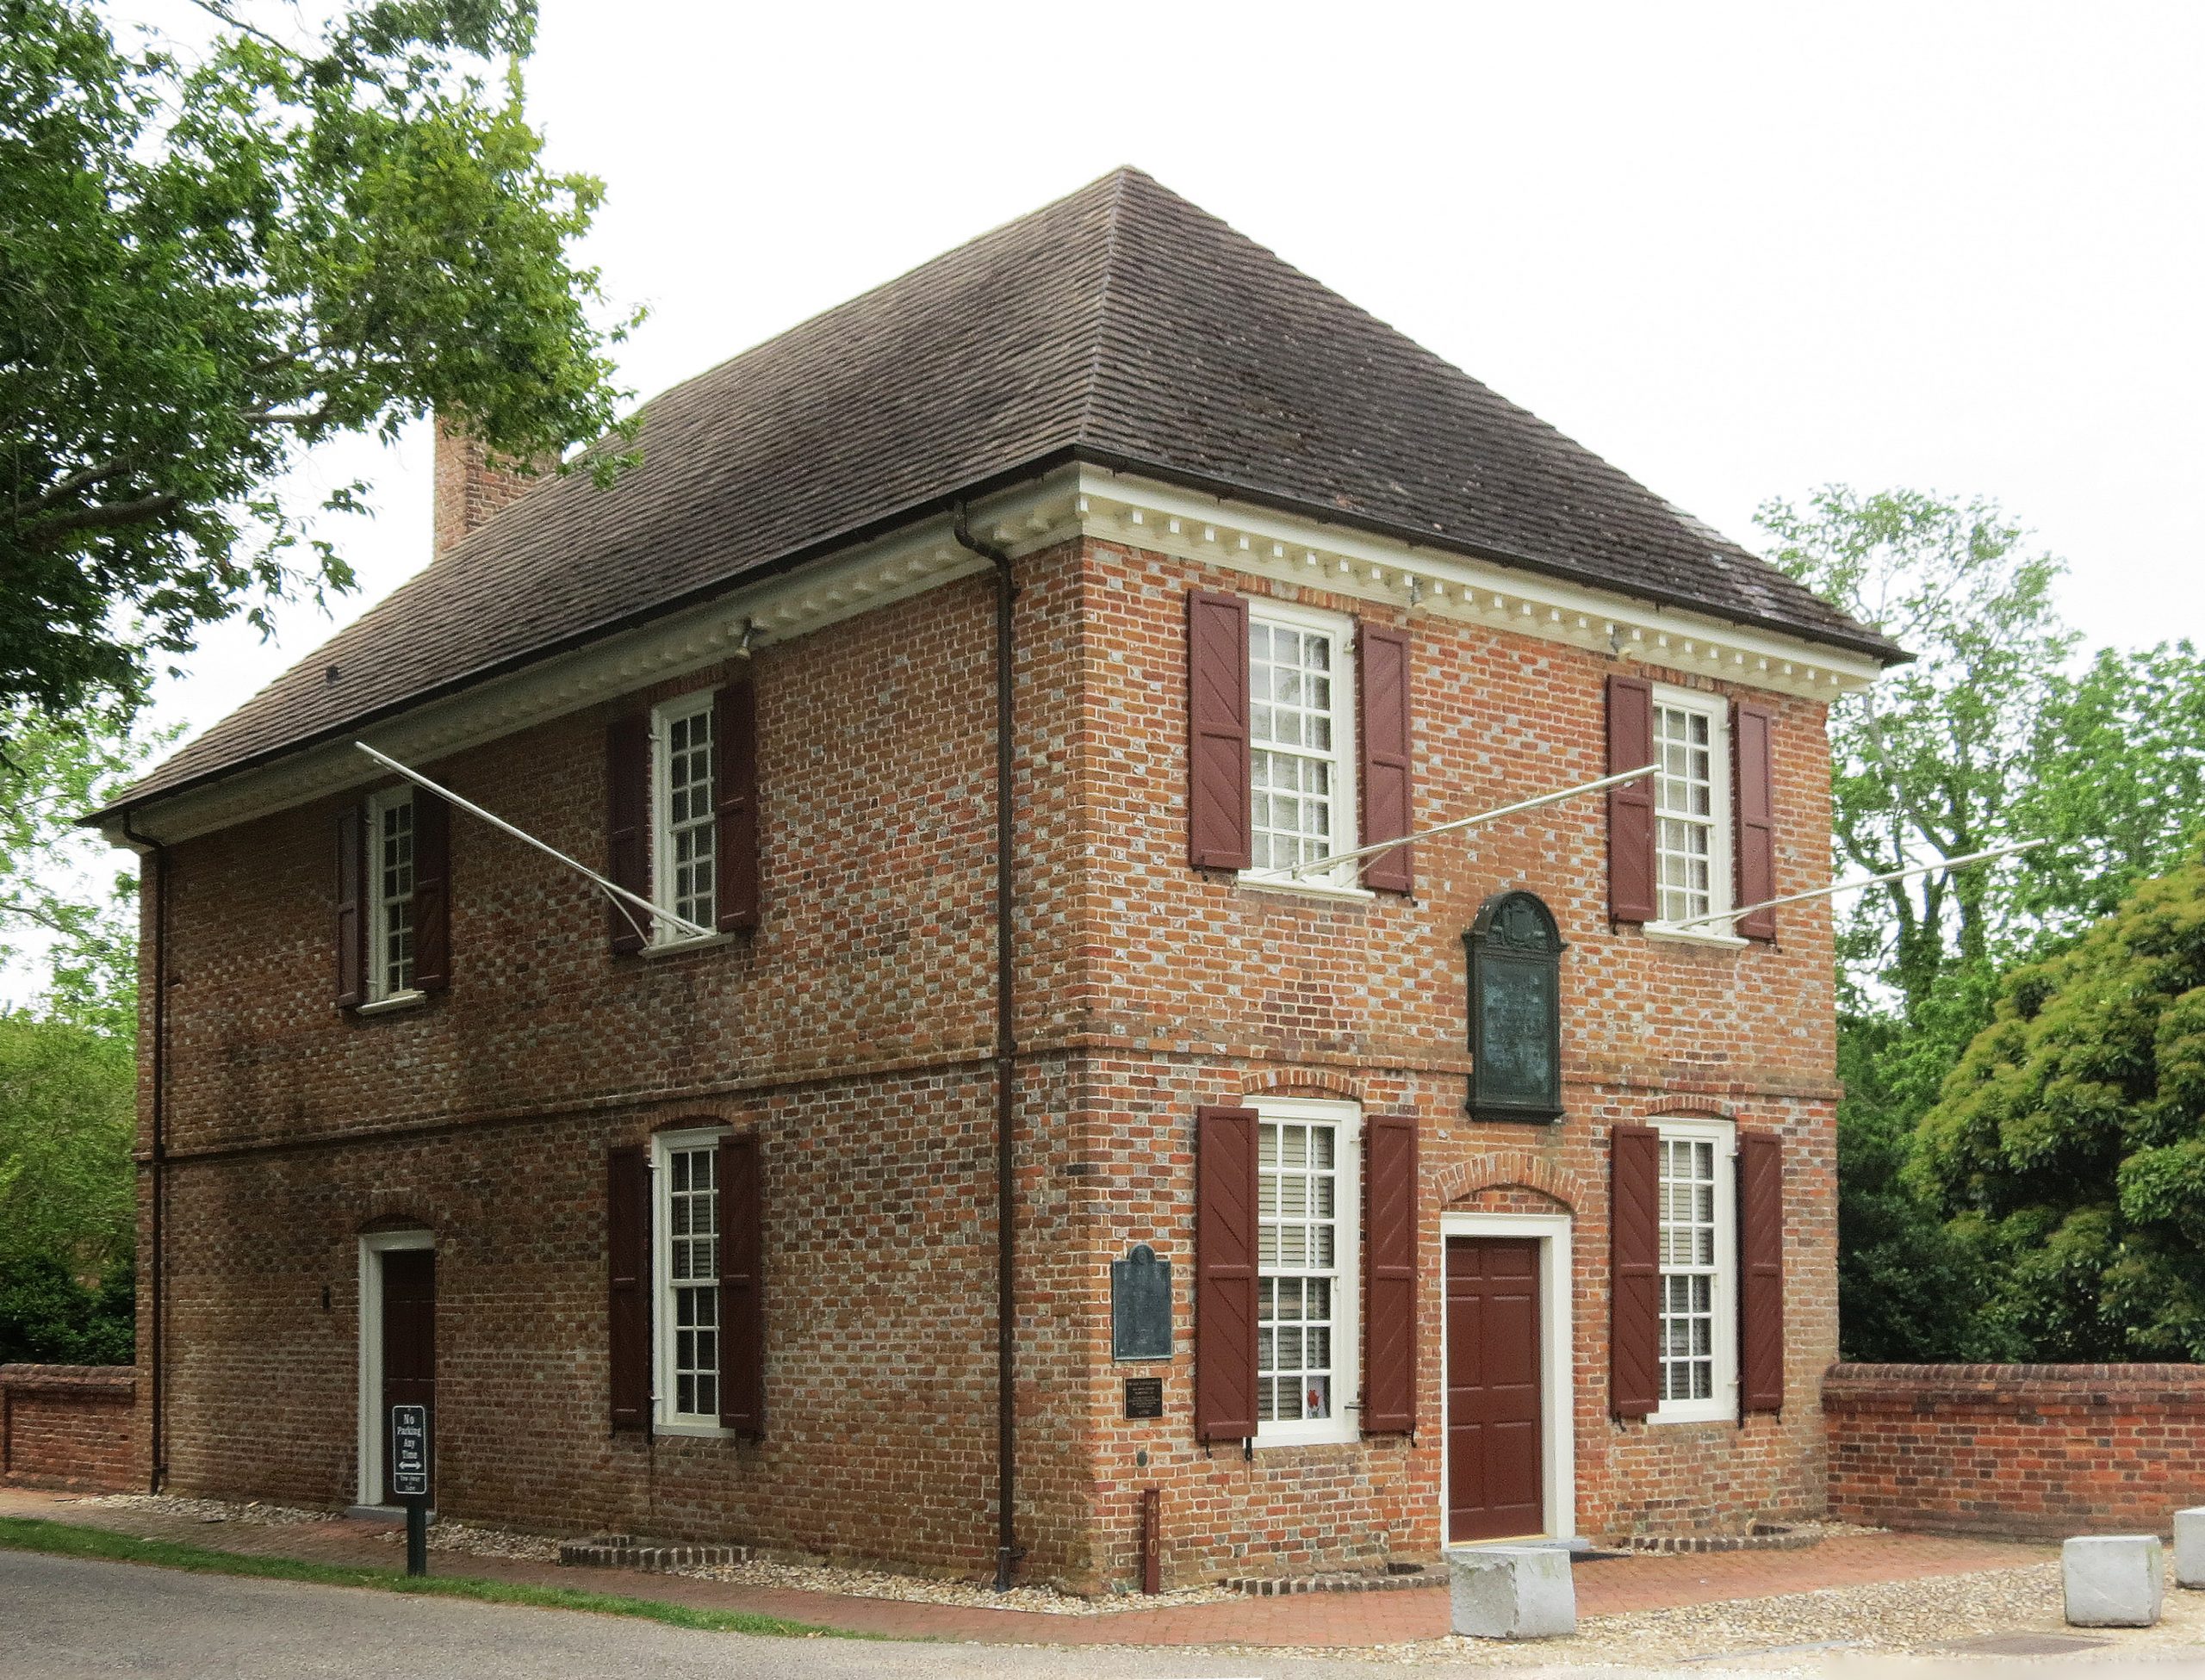 The Old Custom House